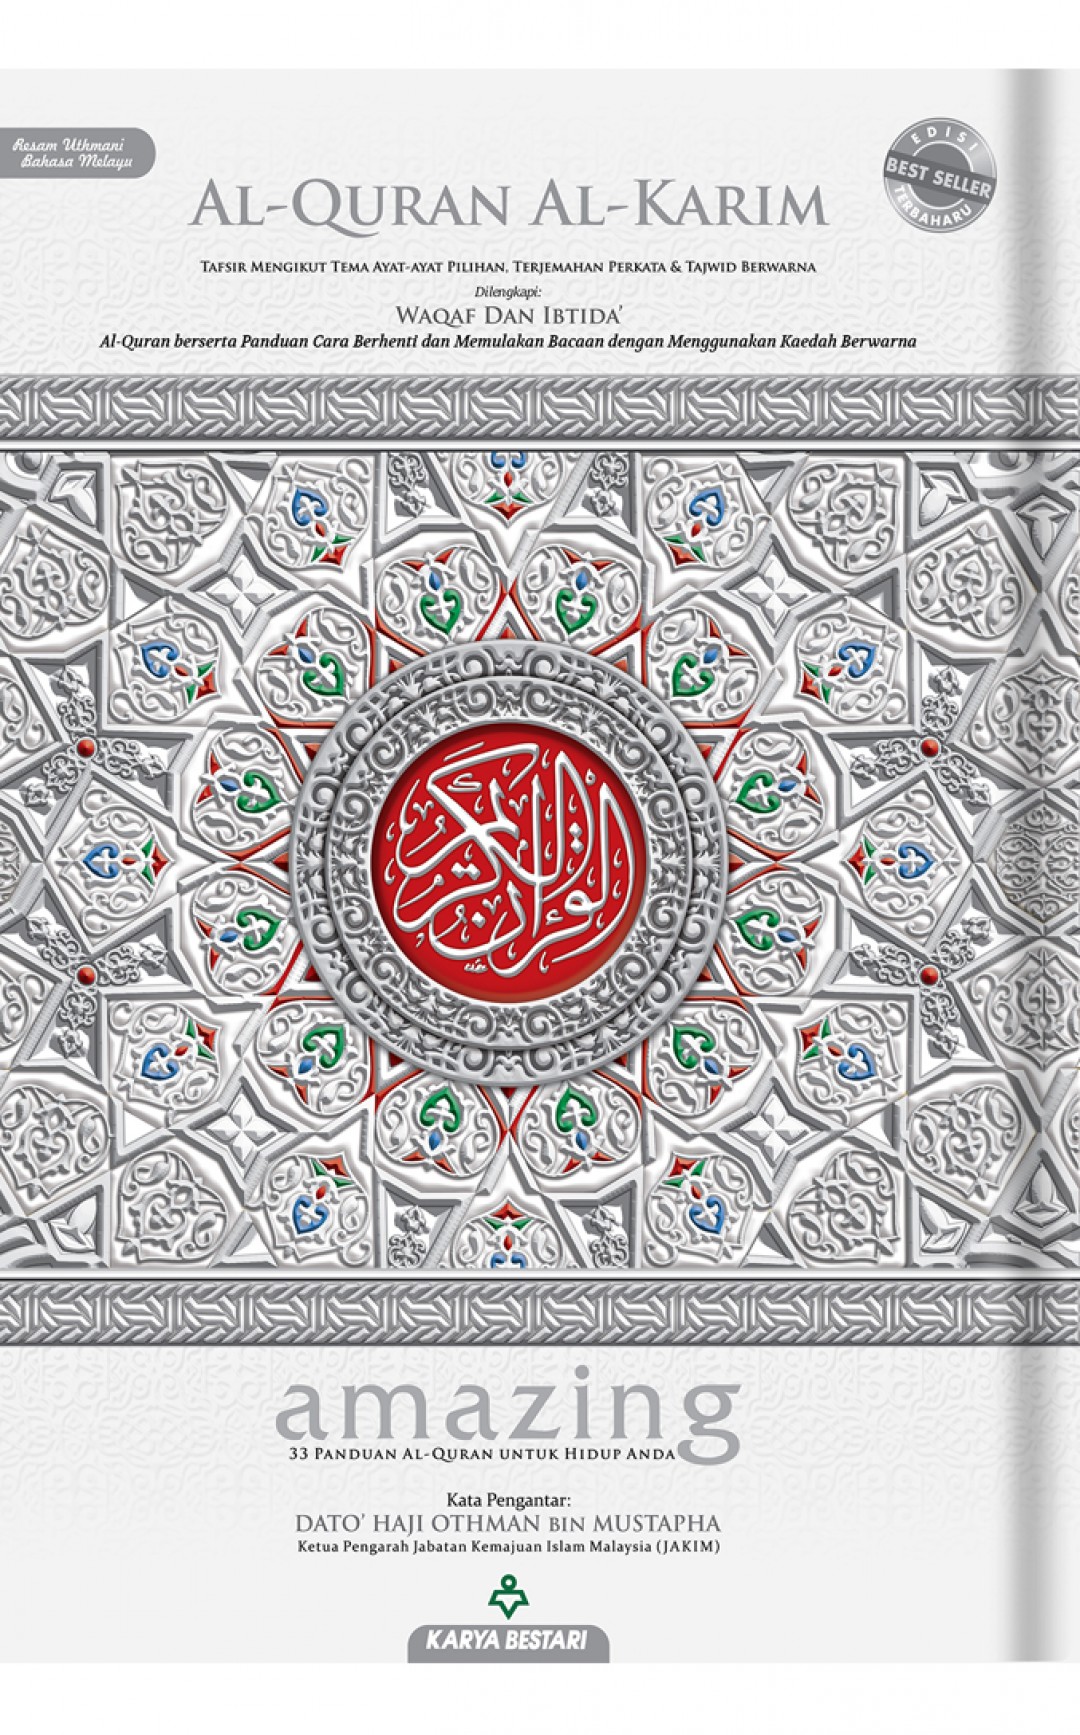 Al-Quran Al-Karim Amazing A4